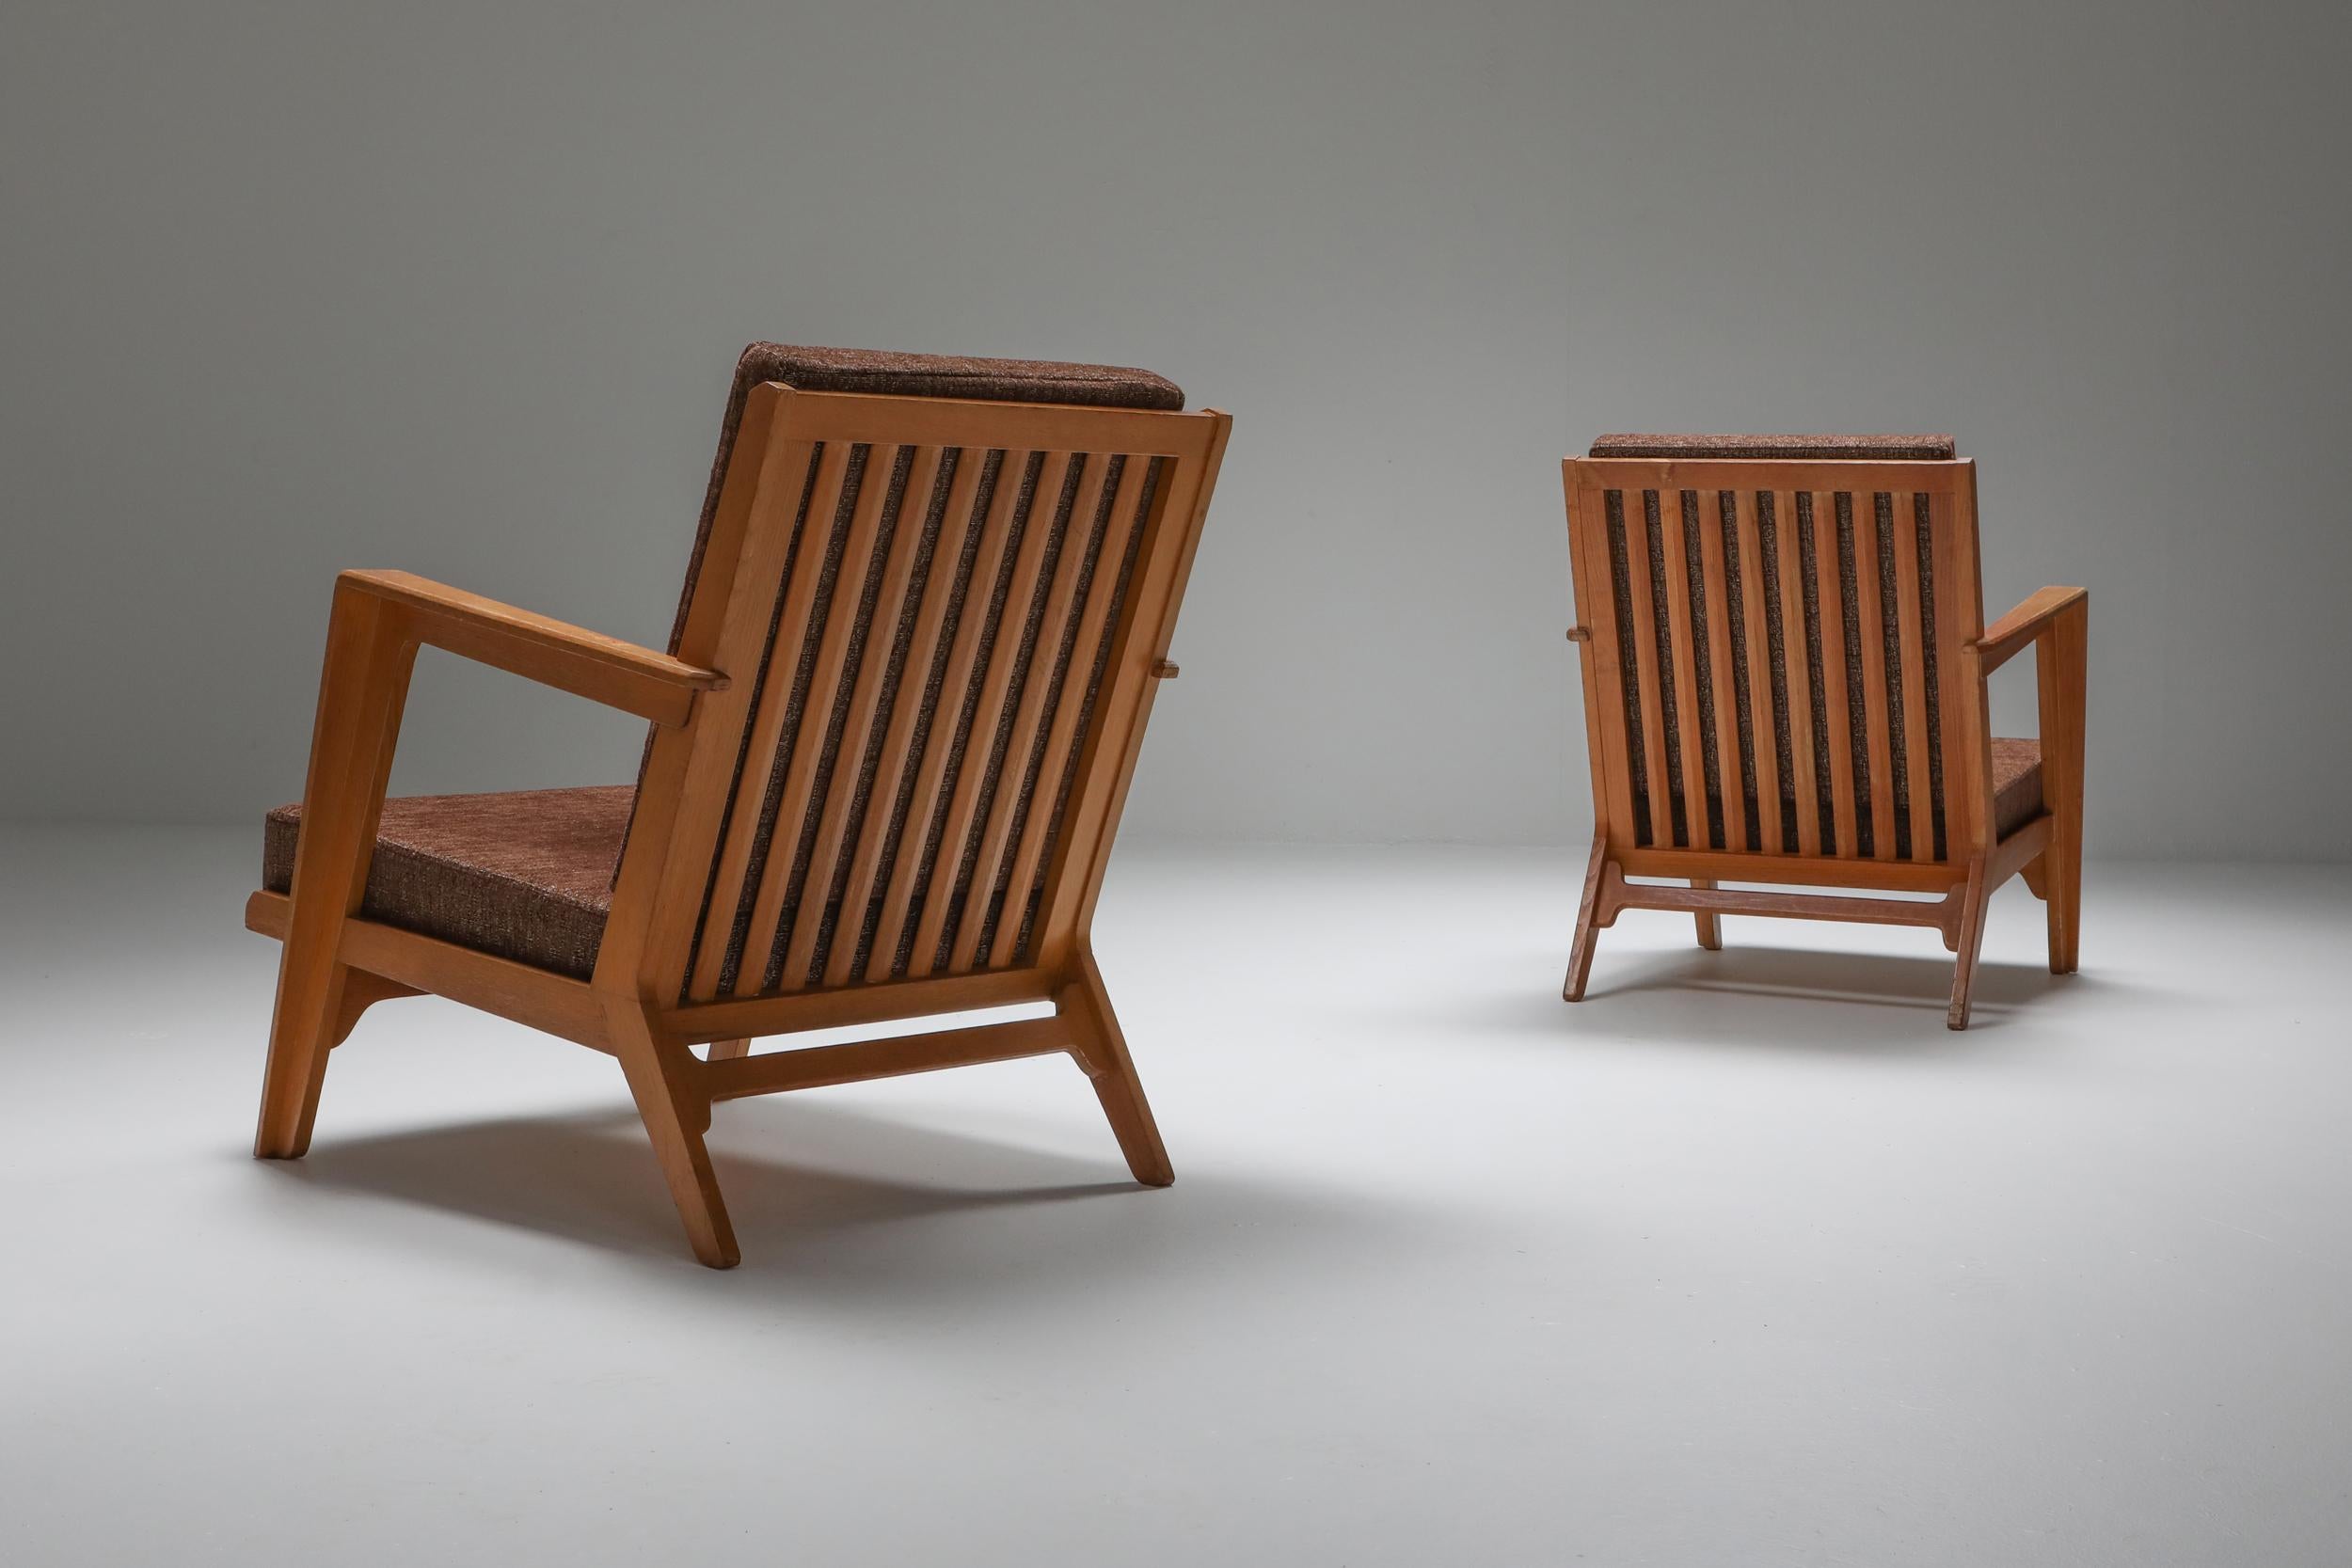 Mid-Century Modern, Elmar Berkovich, chaise longue, 1950, Pays-Bas.

Il s'agit d'une paire de chaises très rare, avec une tapisserie d'origine, un cadre en teck et des détails étonnants.
Elmar Berkovich possède plusieurs pièces dans les